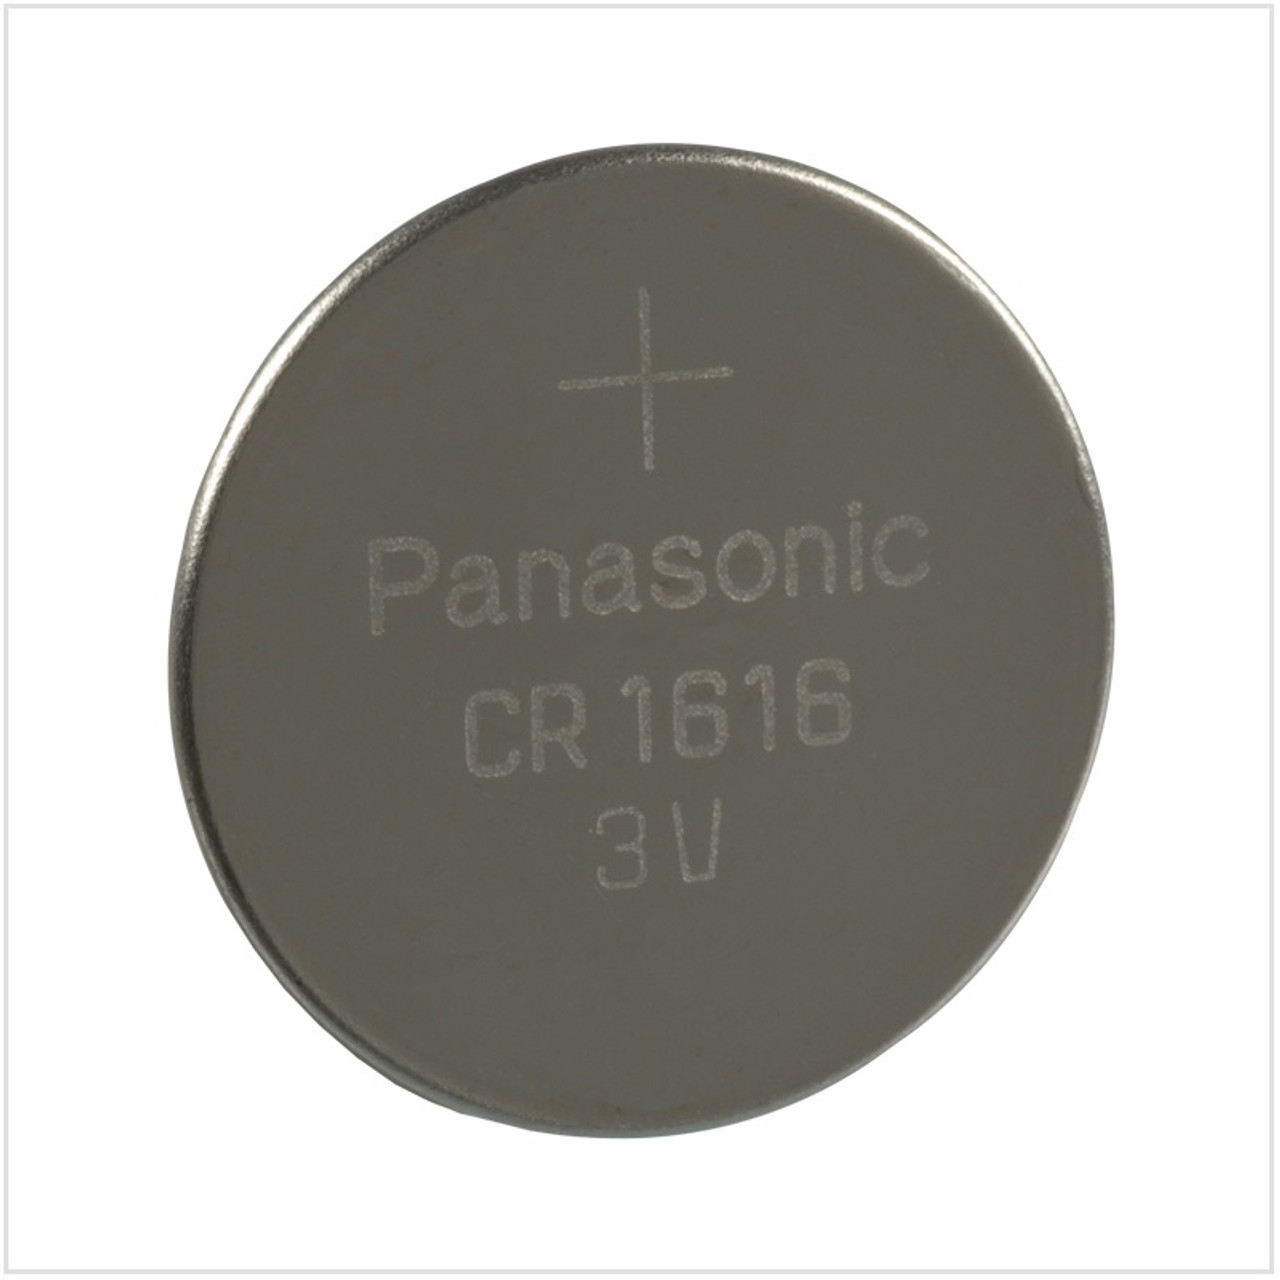 CR1616 - Panasonic Batteries - Battery, 3 V, Coin Cell